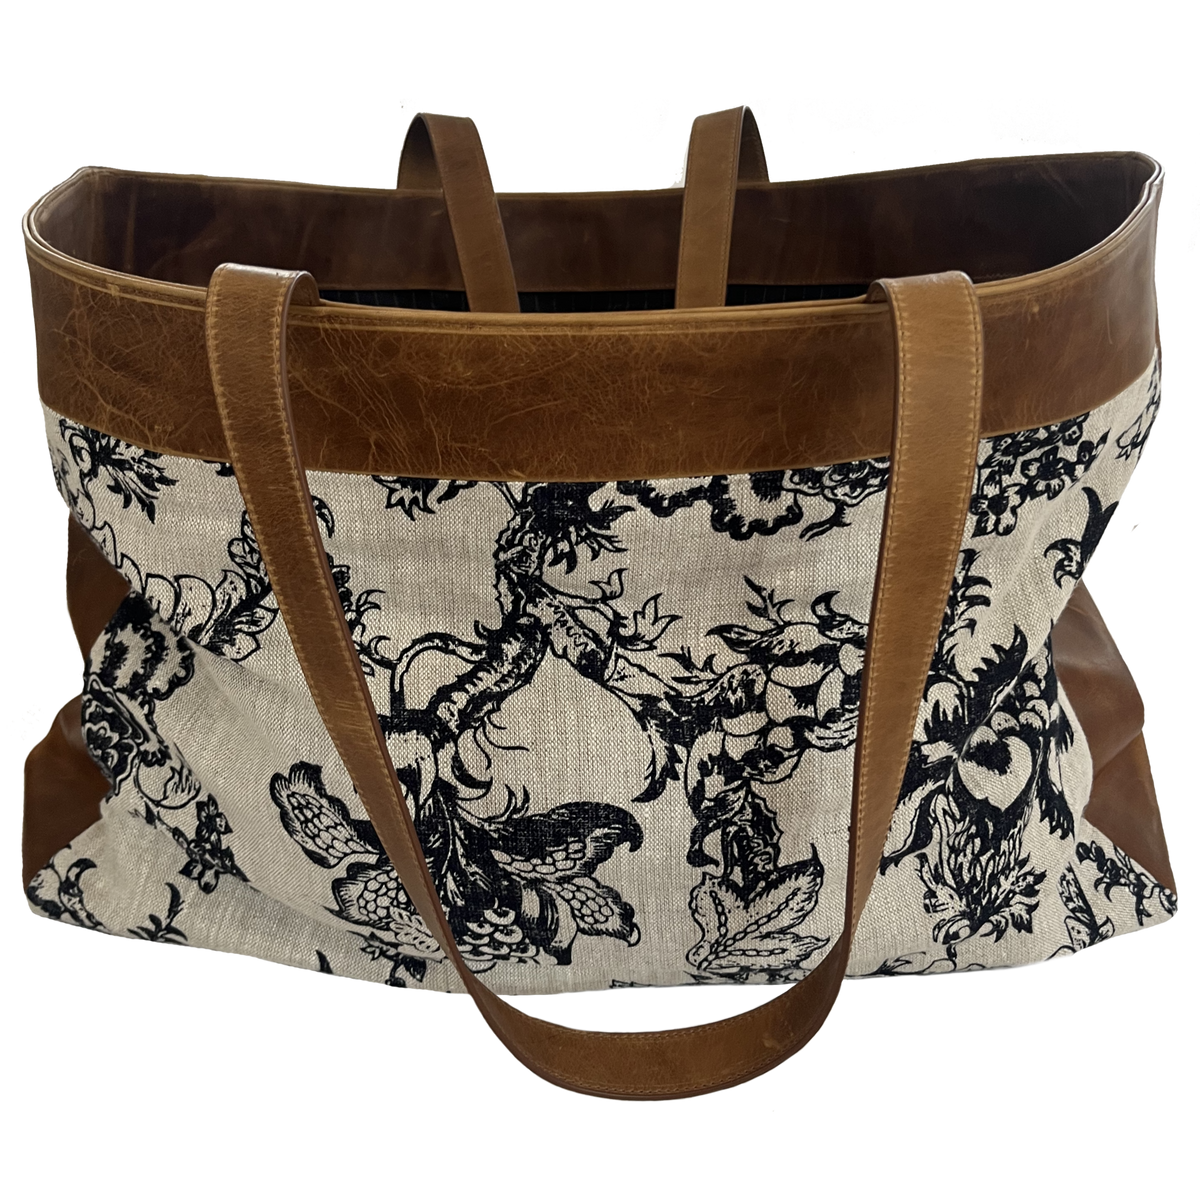 The Floral Linen Saddle Weekender Bag